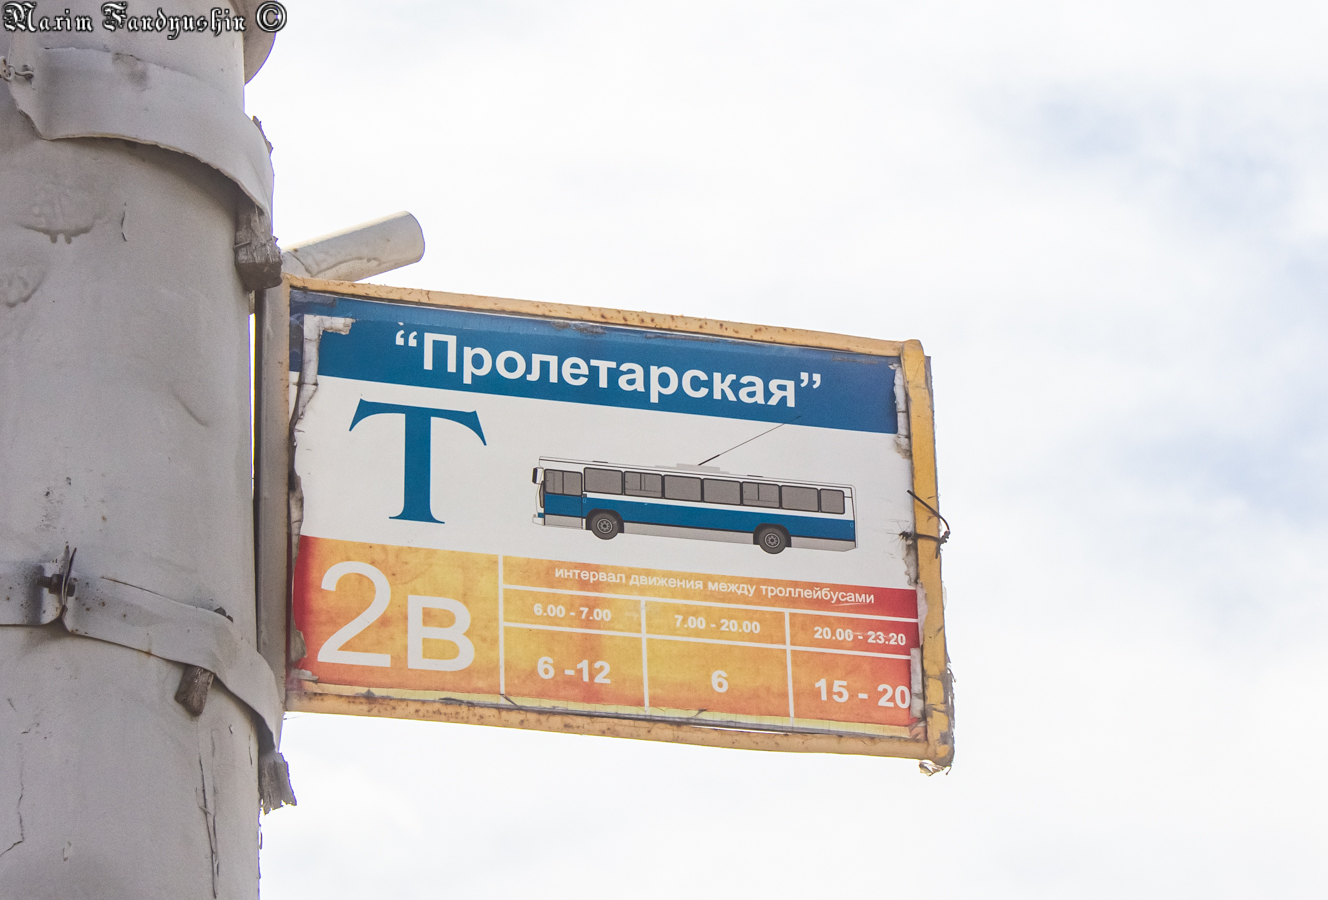 Blagoveshchensk — Miscellaneous photos